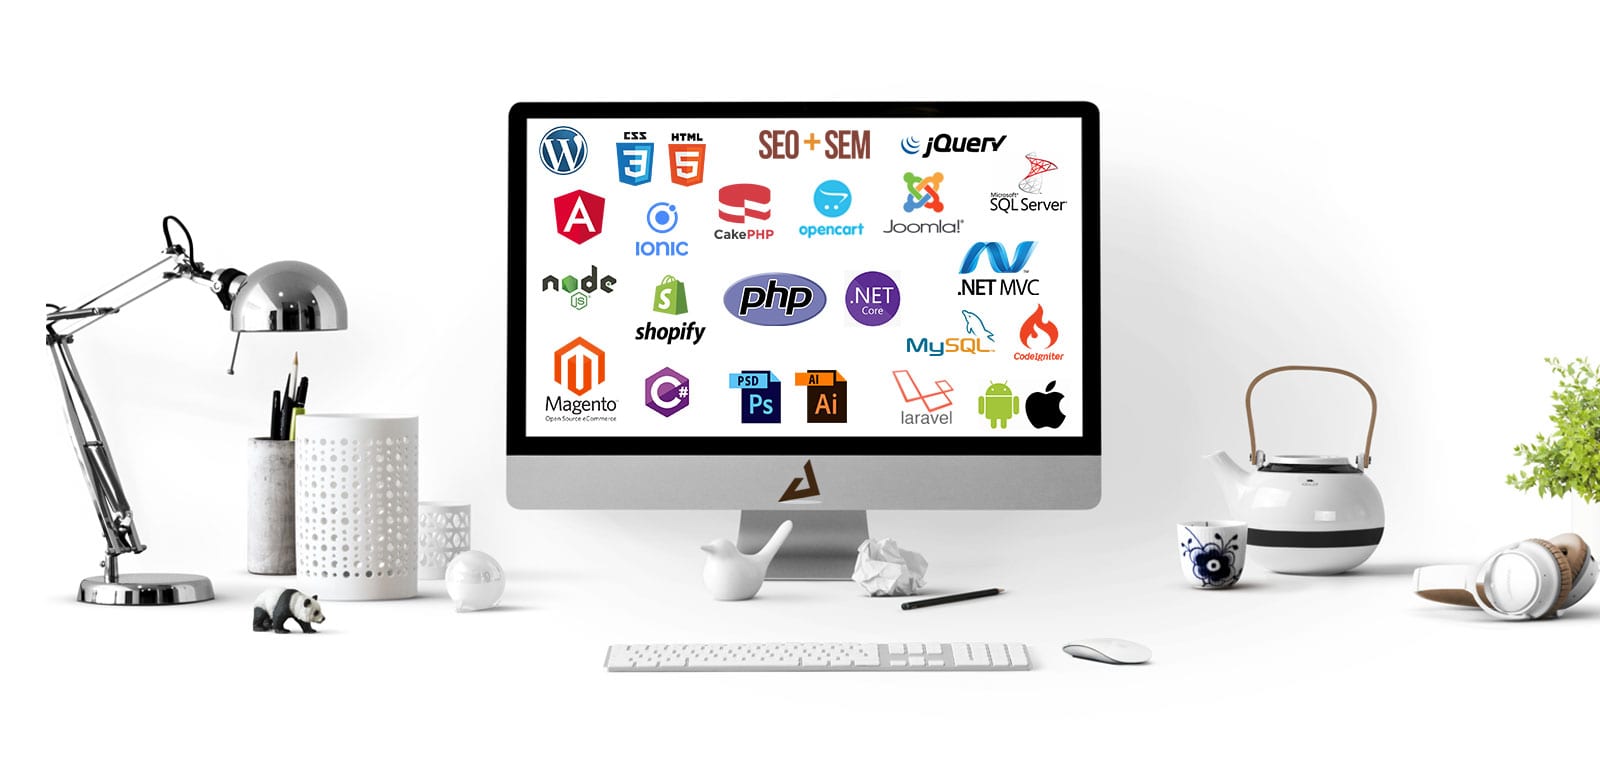 Web Design And Development Company